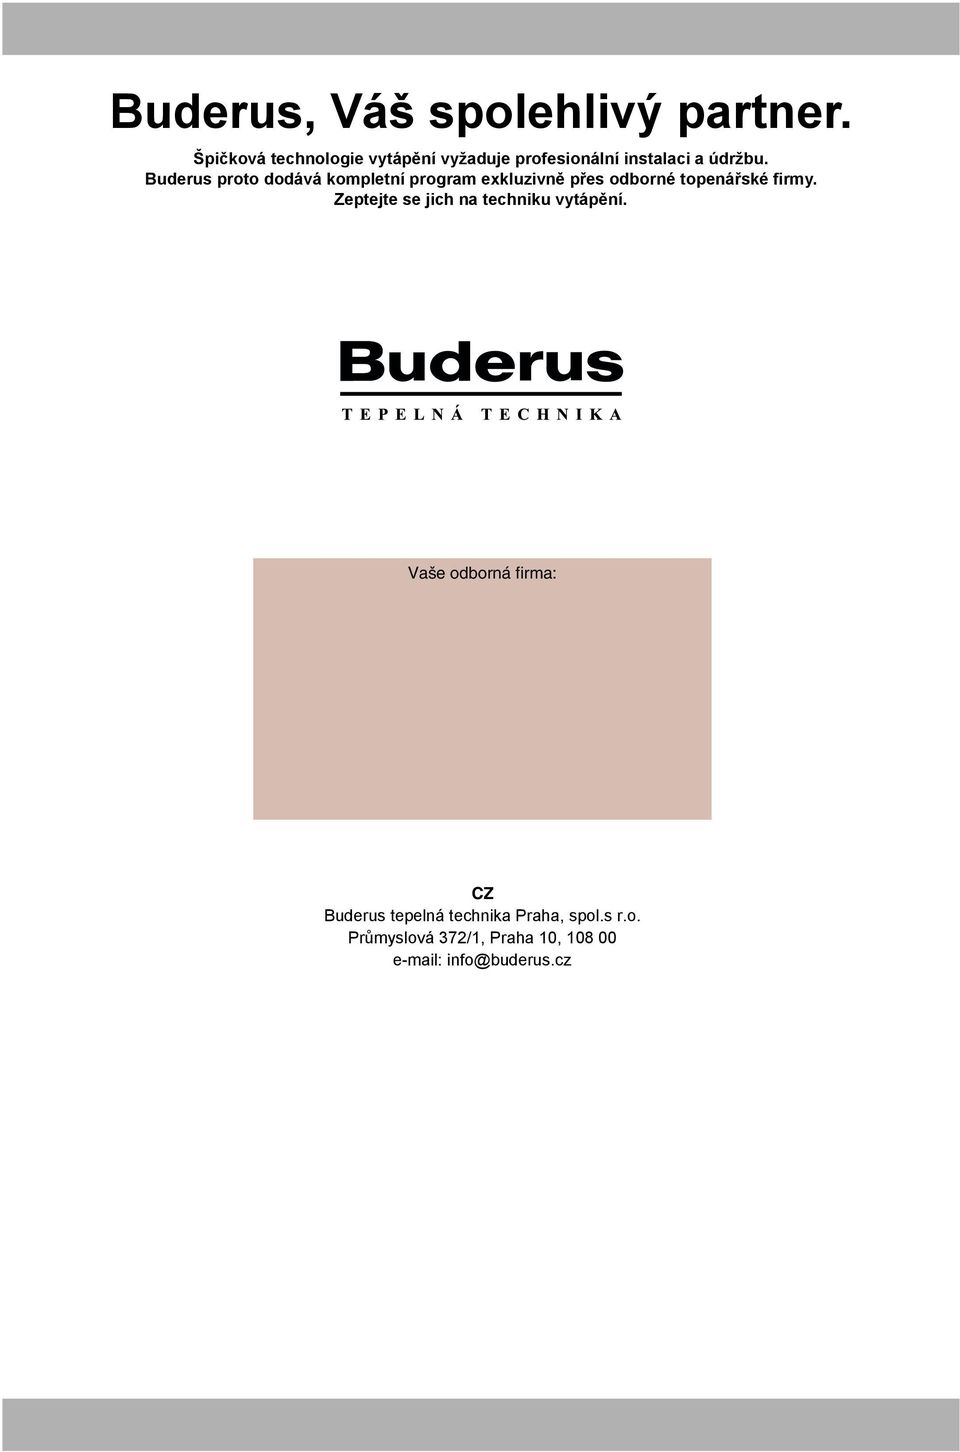 Buderus proto dodává kompletní program exkluzivně přes odborné topenářské firmy.